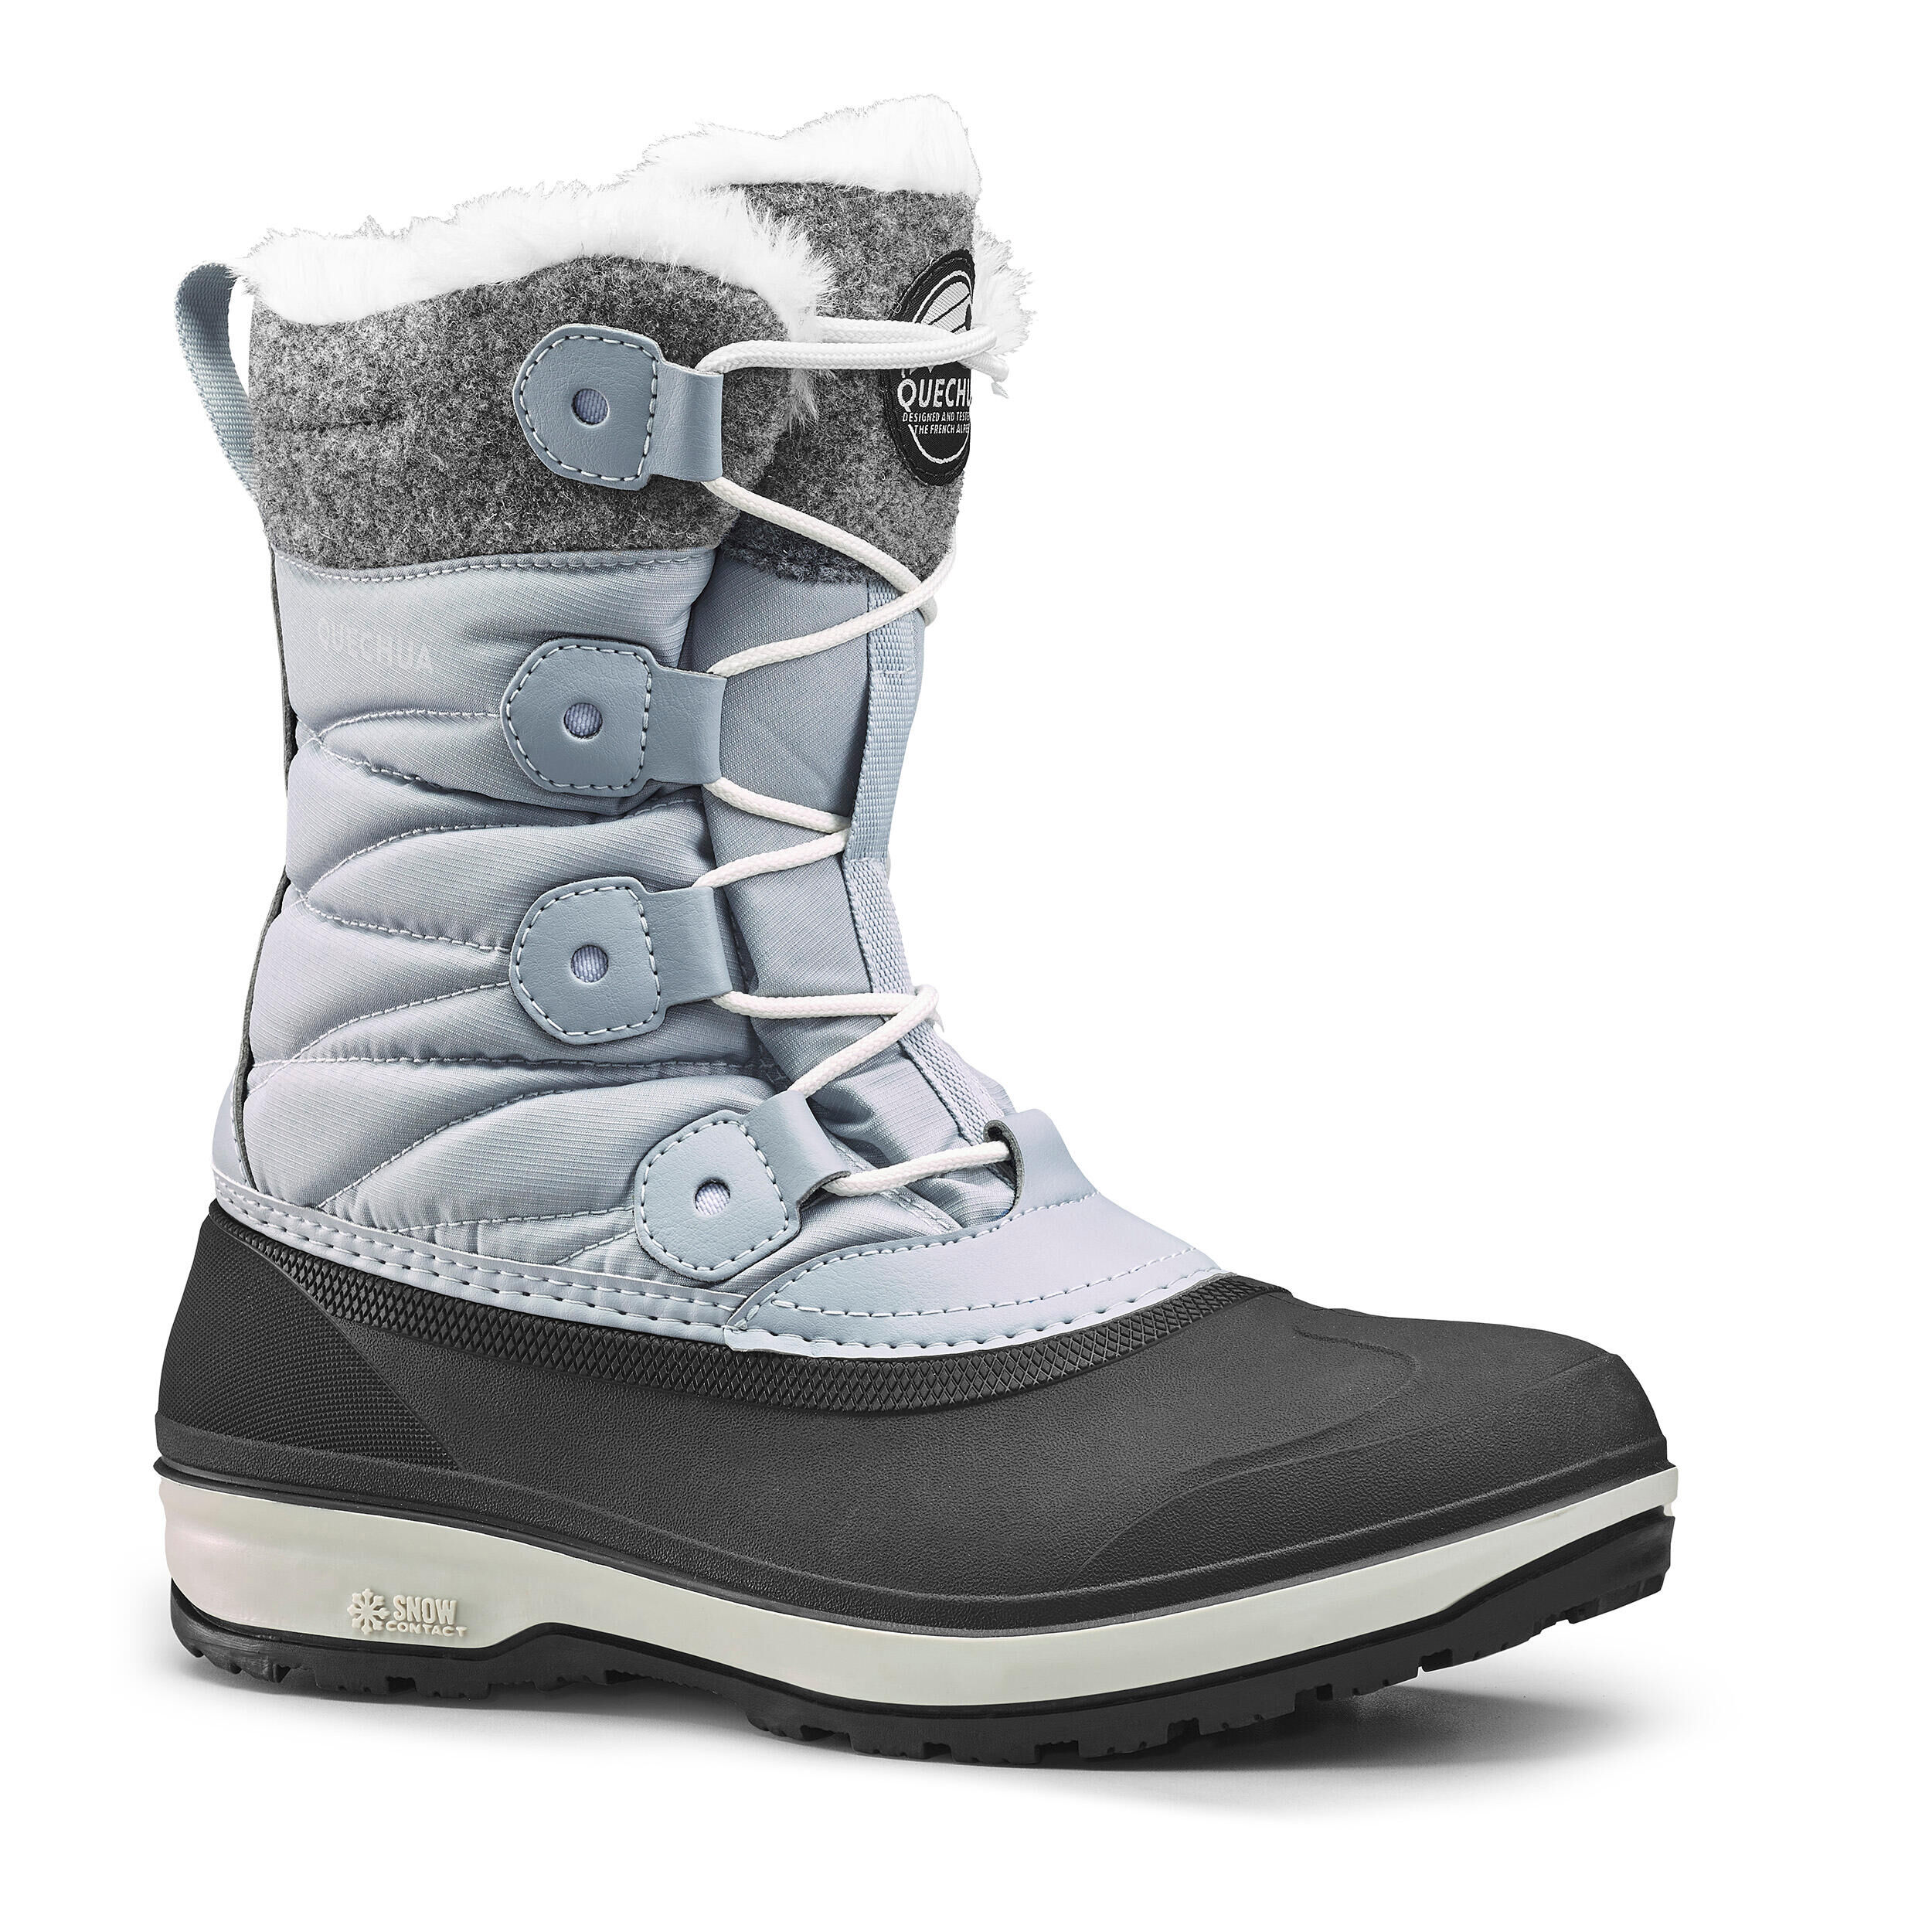 QUECHUA Women's Warm Waterproof High Snow Boots SH500 X-Warm